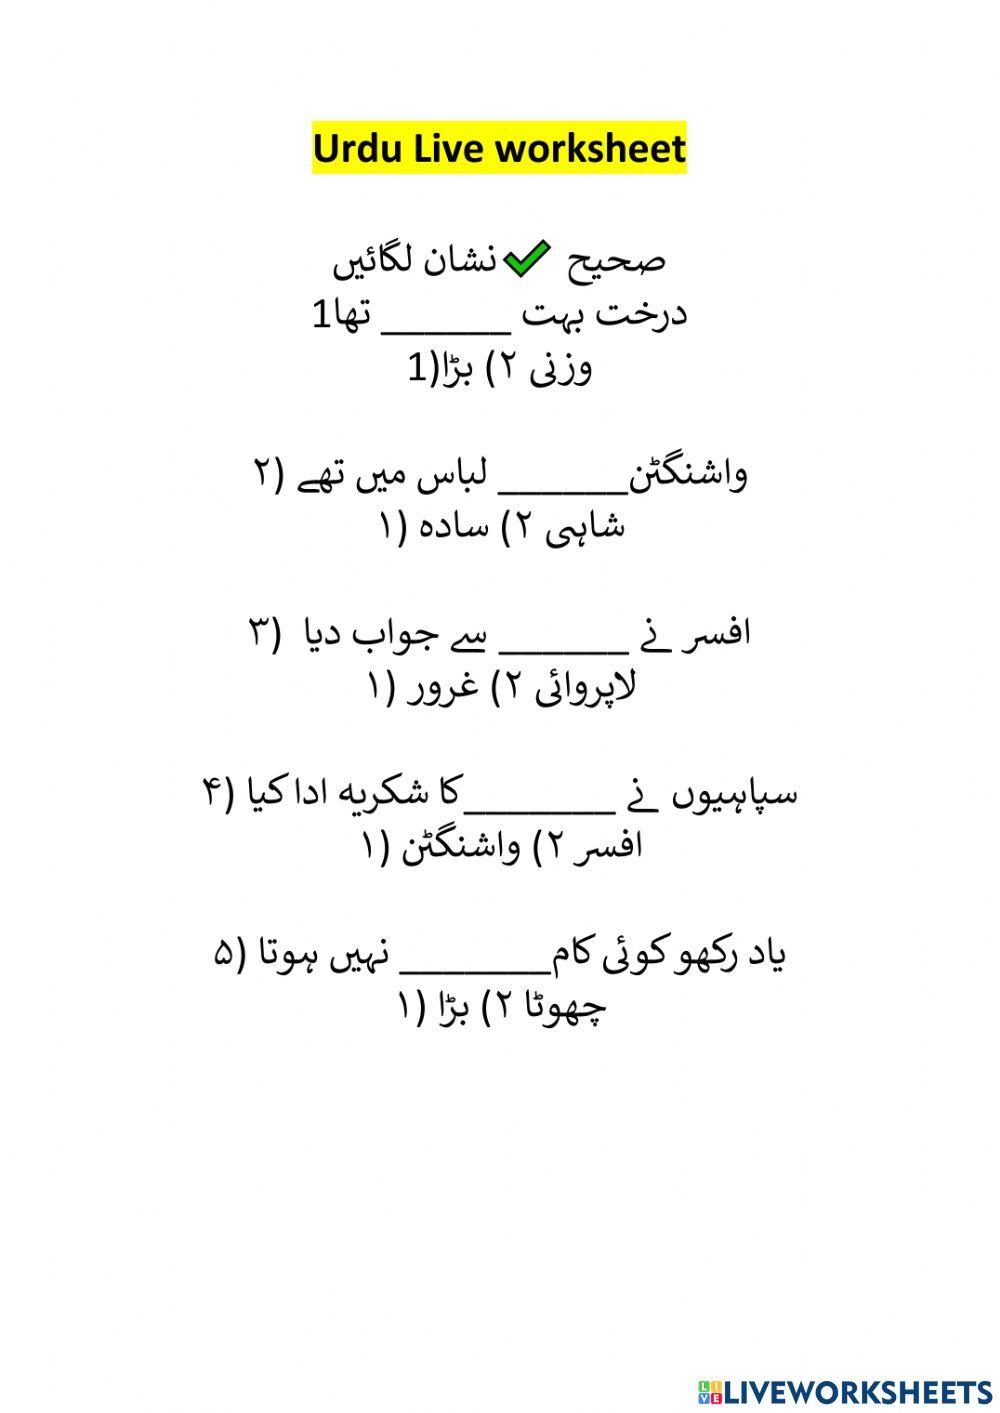 Urdu worksheet